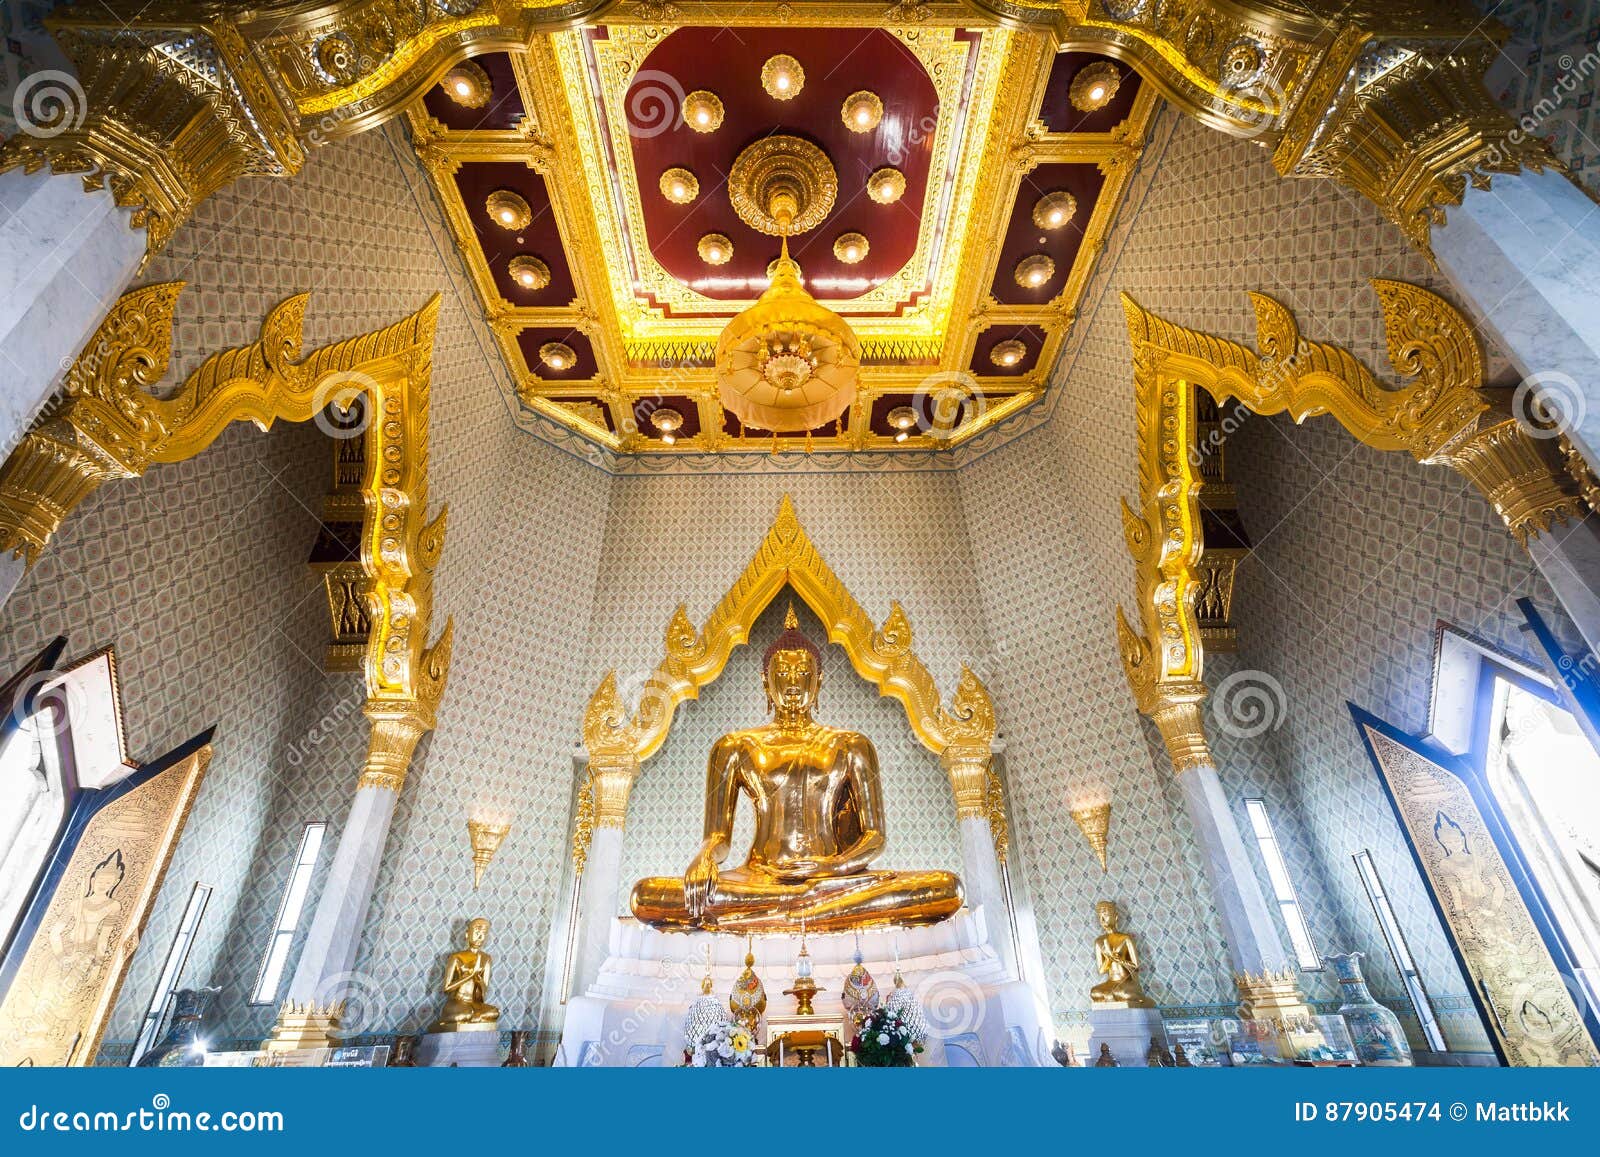 golden buddha at wat traimit, bangkok, thailand